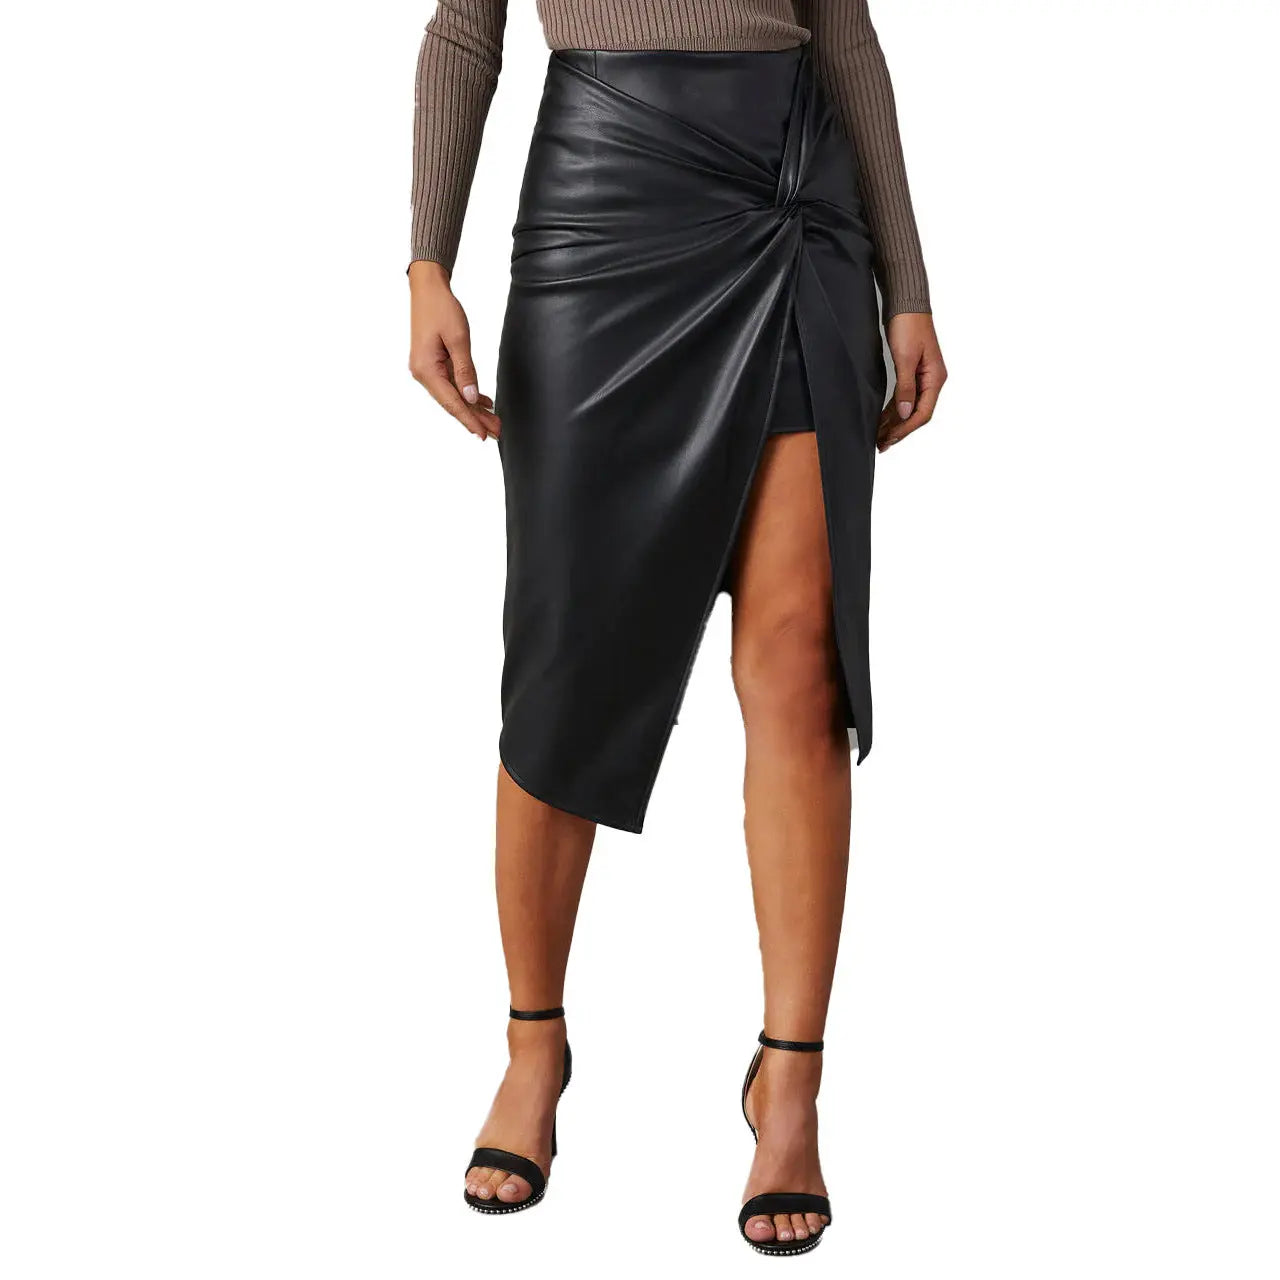 Chic Mid-Length Split Leather Skirt for Women - Trendy Street Style - Image #2